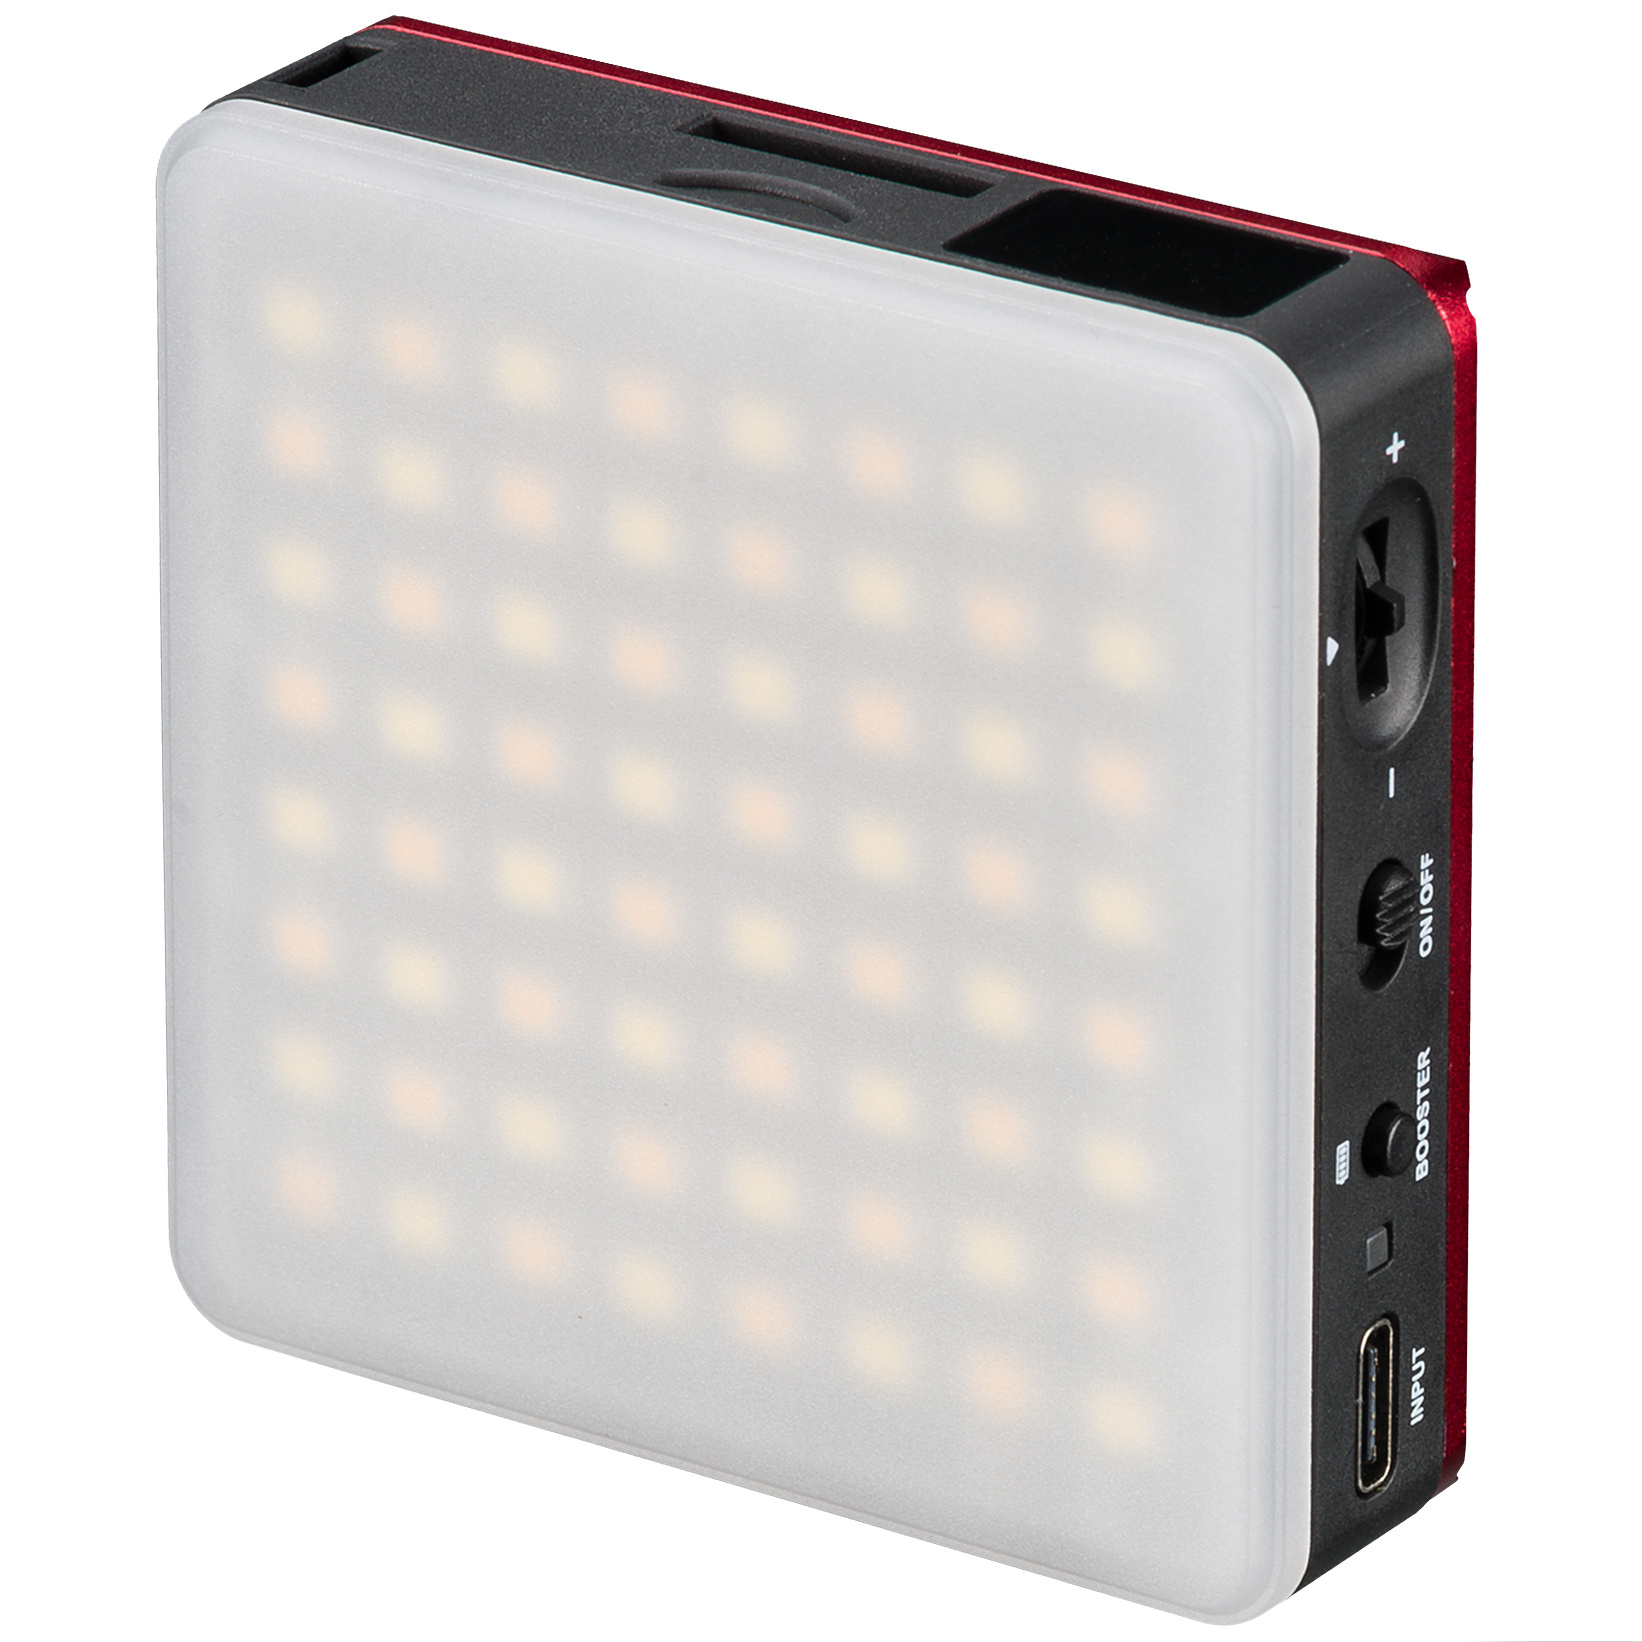 Éclairage de Poche en continu à LED 5 W BRESSER Bi-Color pour l’Utilisation nomade et la Photographie avec un Smartphone